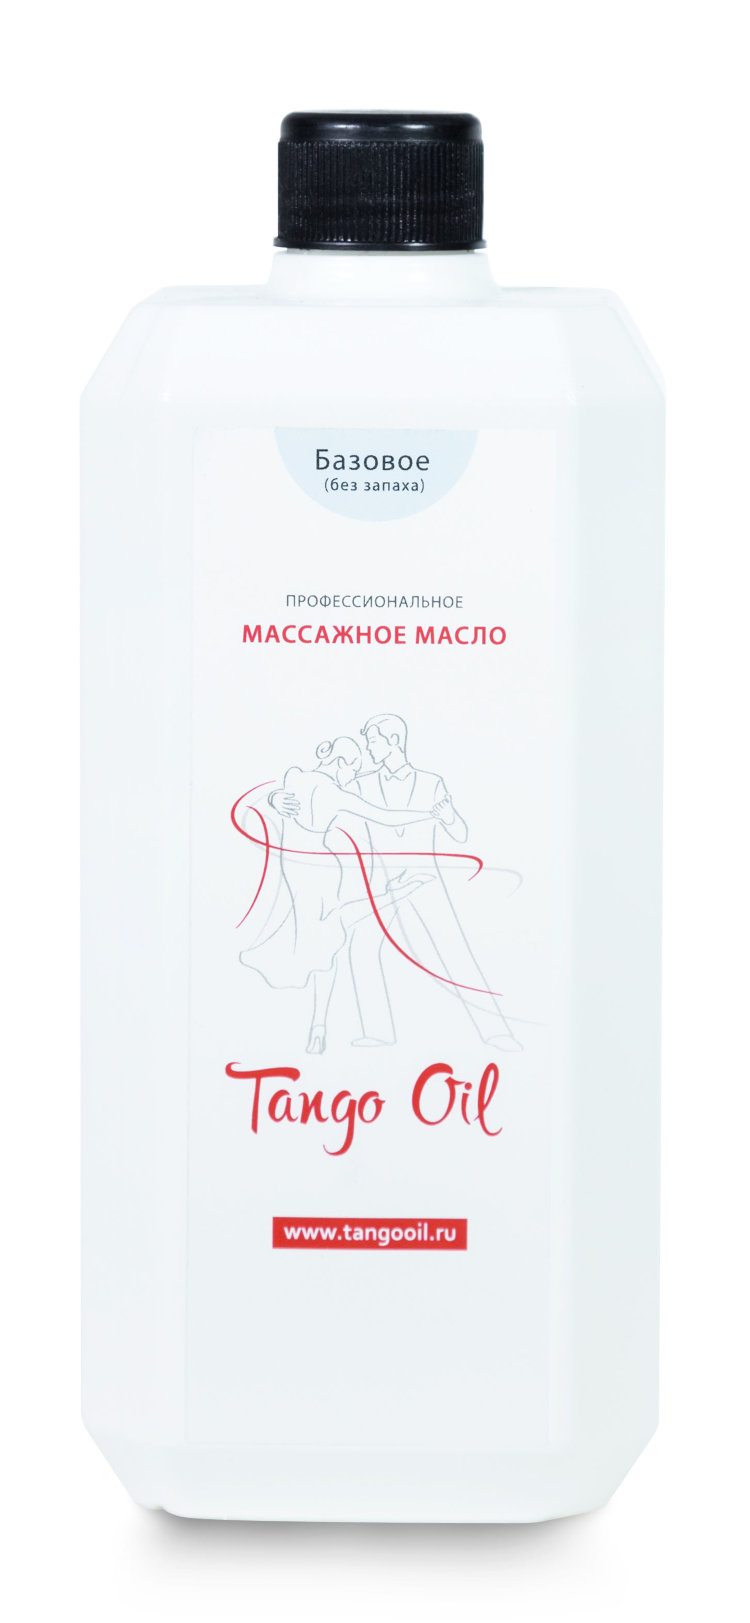 Tango Oil массажное масло Базовое (без запаха), 1000 мл